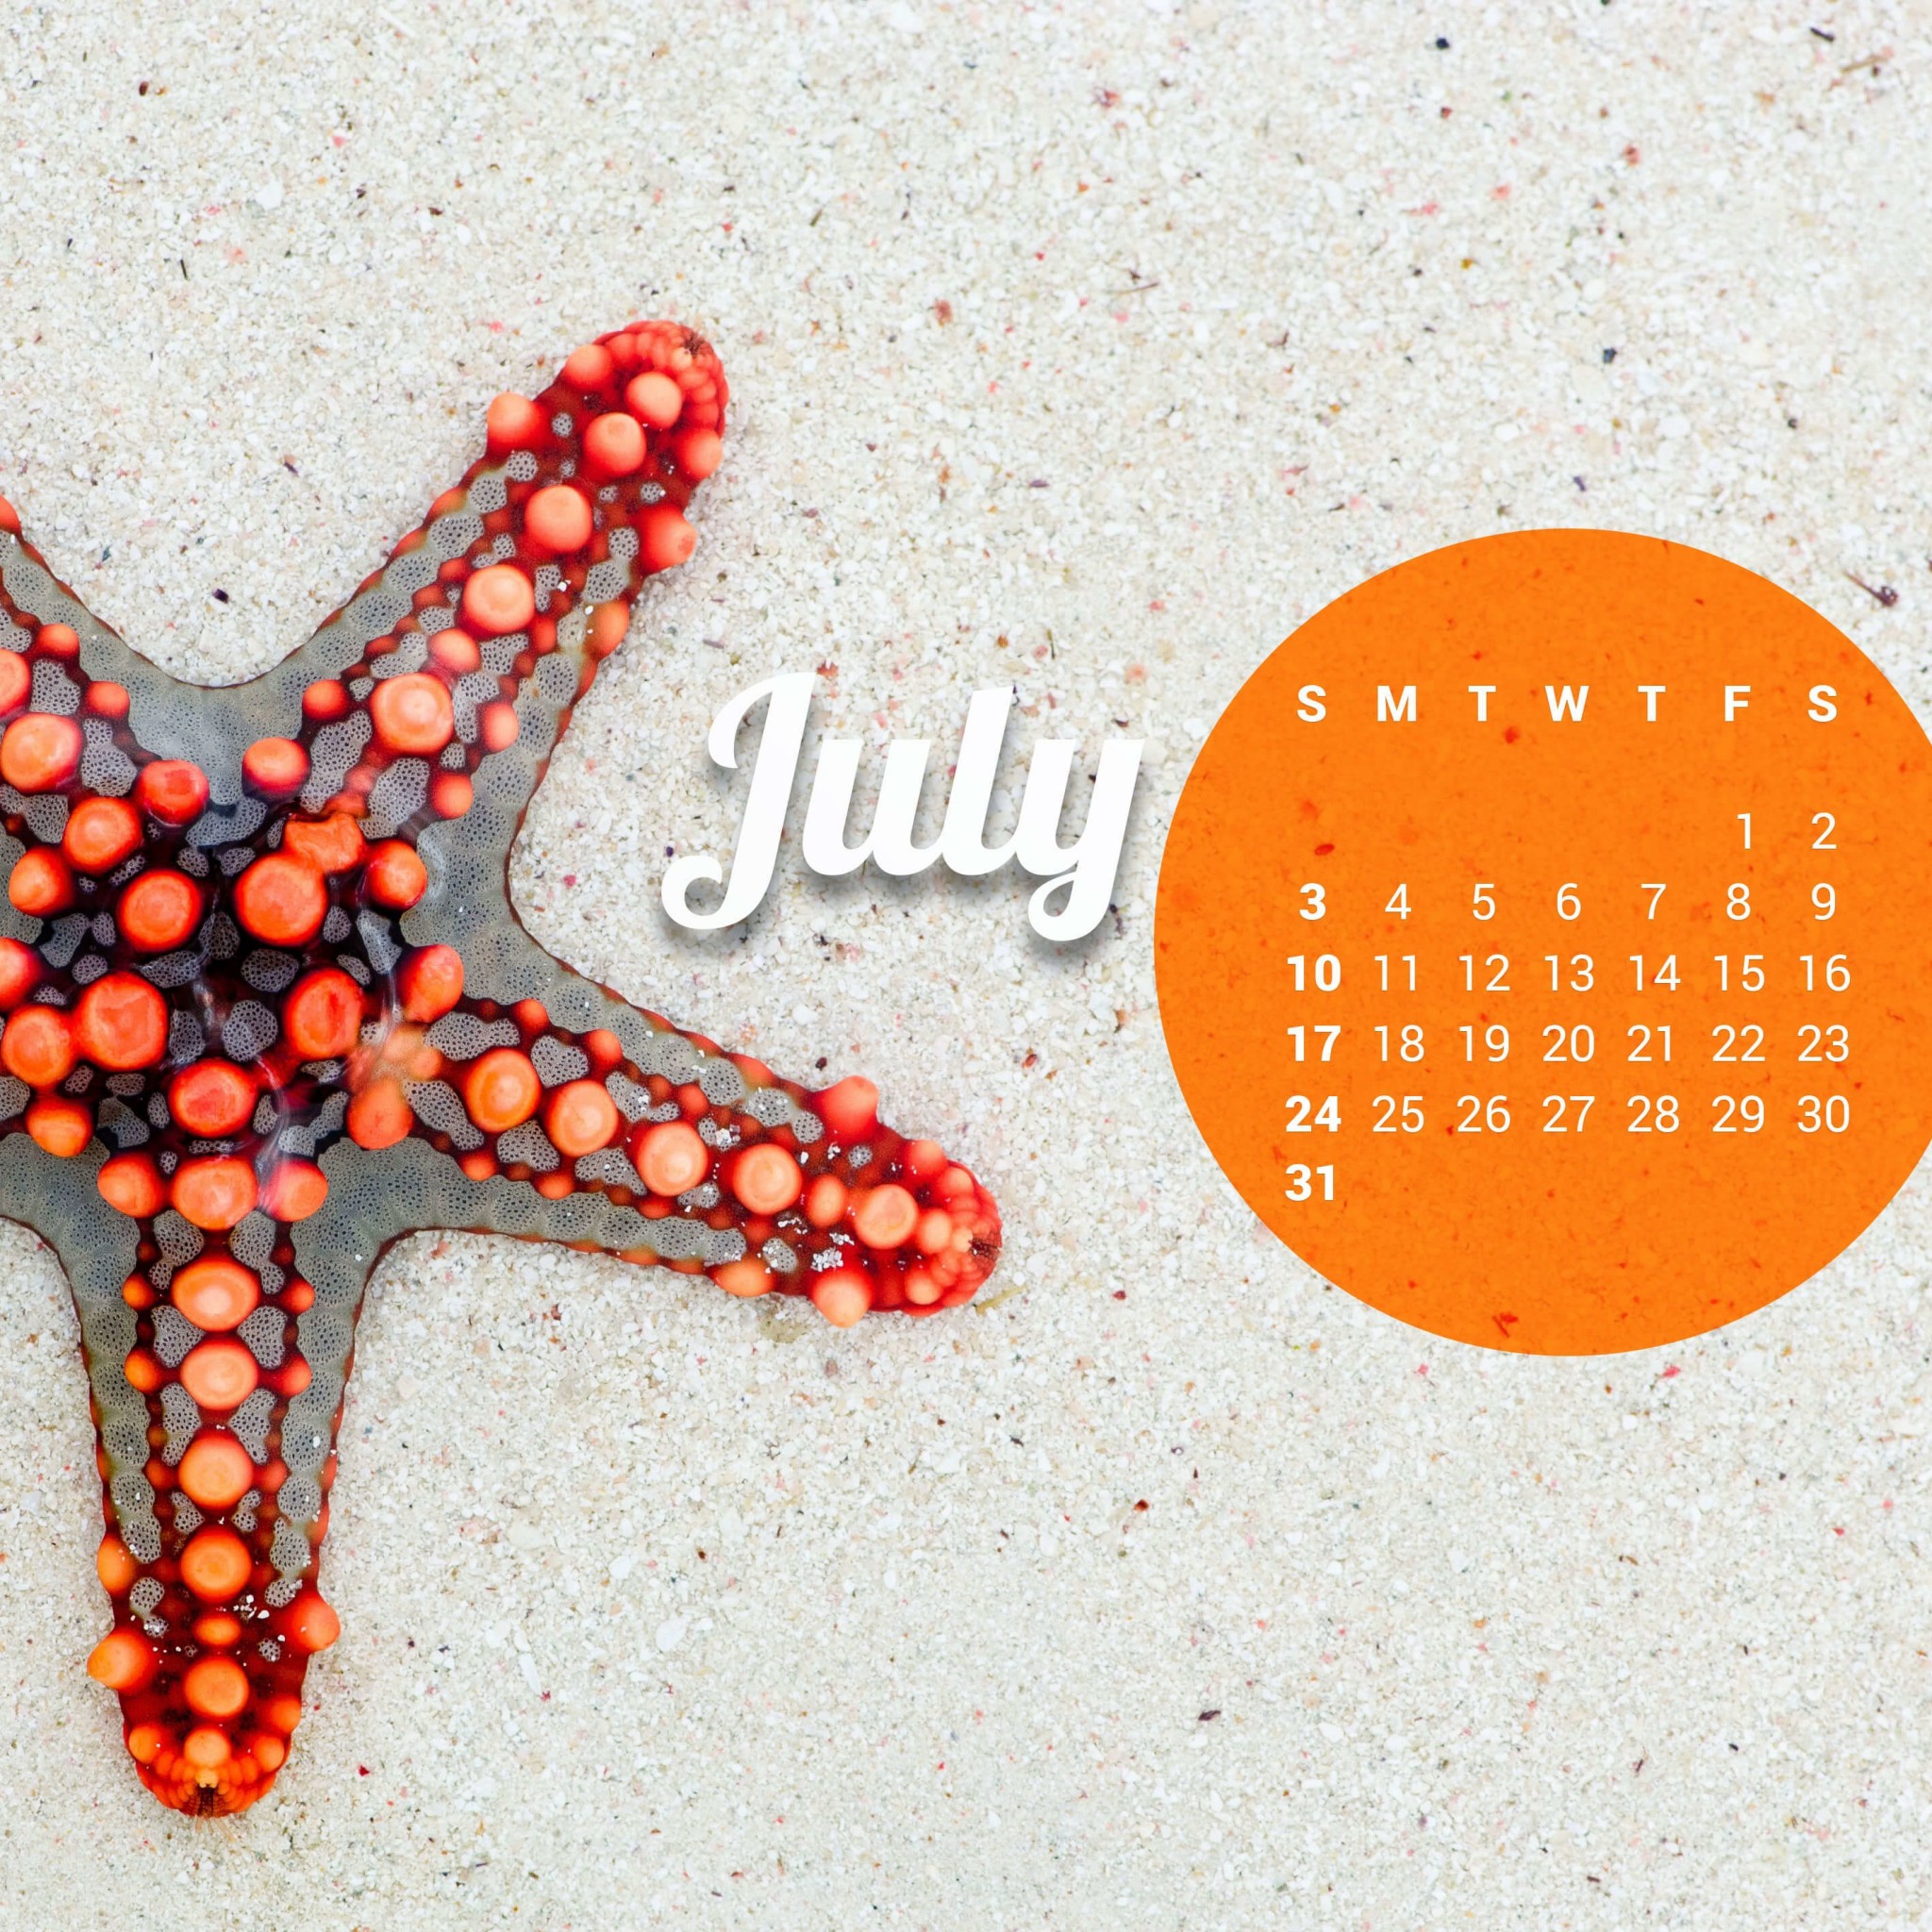 July 2016 Calendar Wallpaper for Google Nexus 9